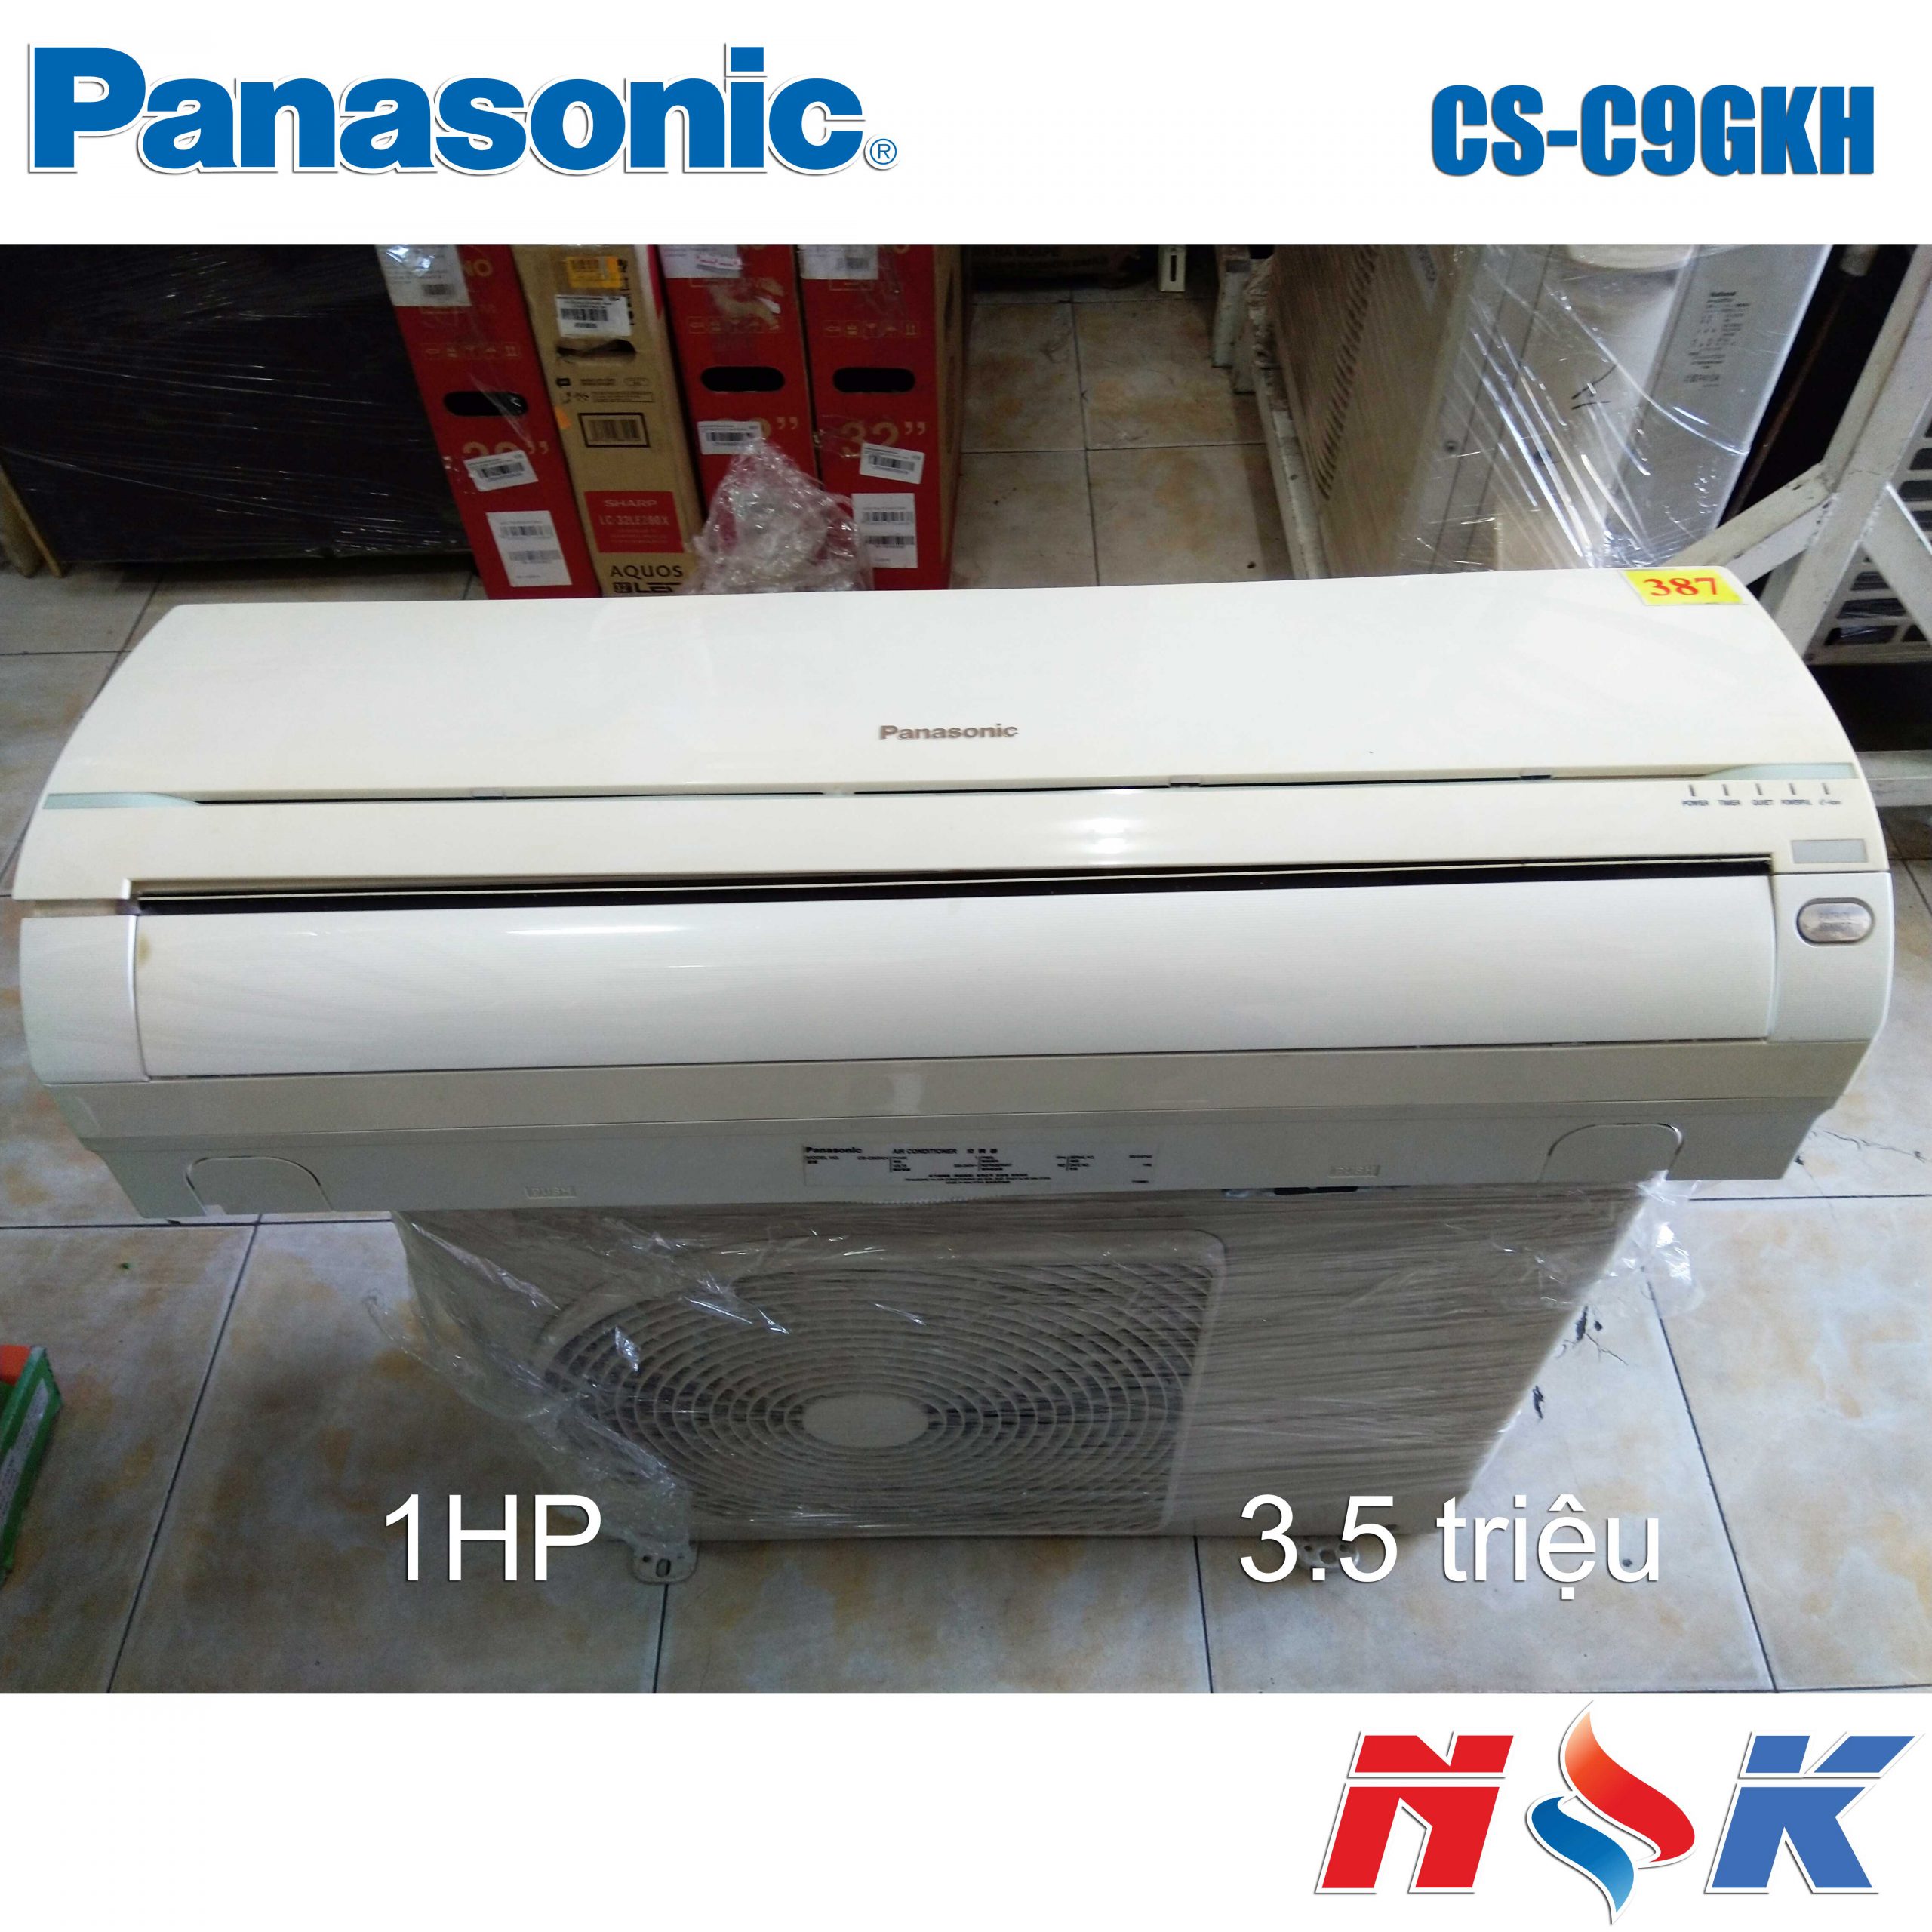 Máy lạnh Panasonic CS-C9GKH 1HP